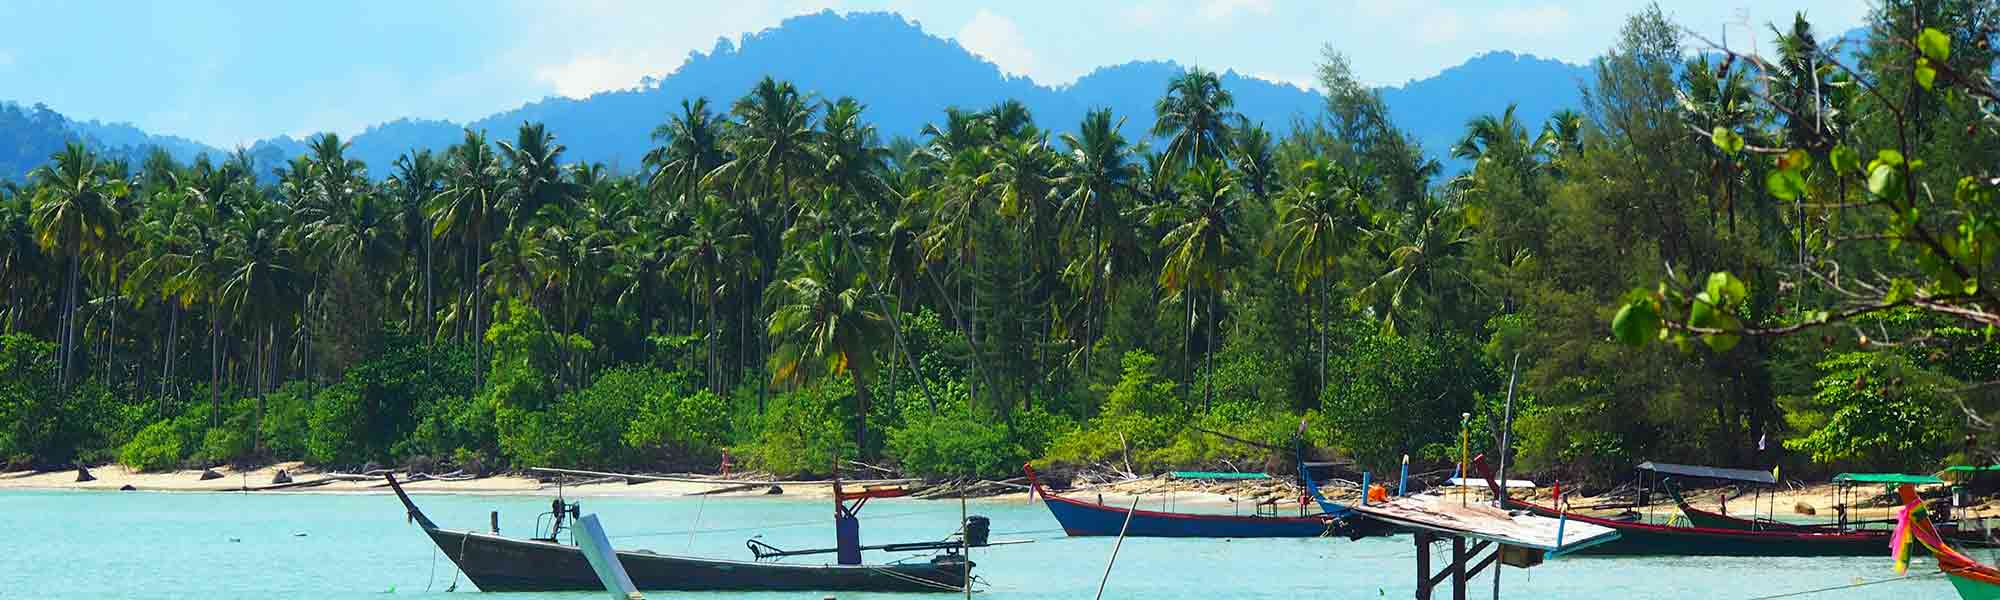 Tradisjonelle fiskebåter langs kysten ved Andmanhavet i Thailand